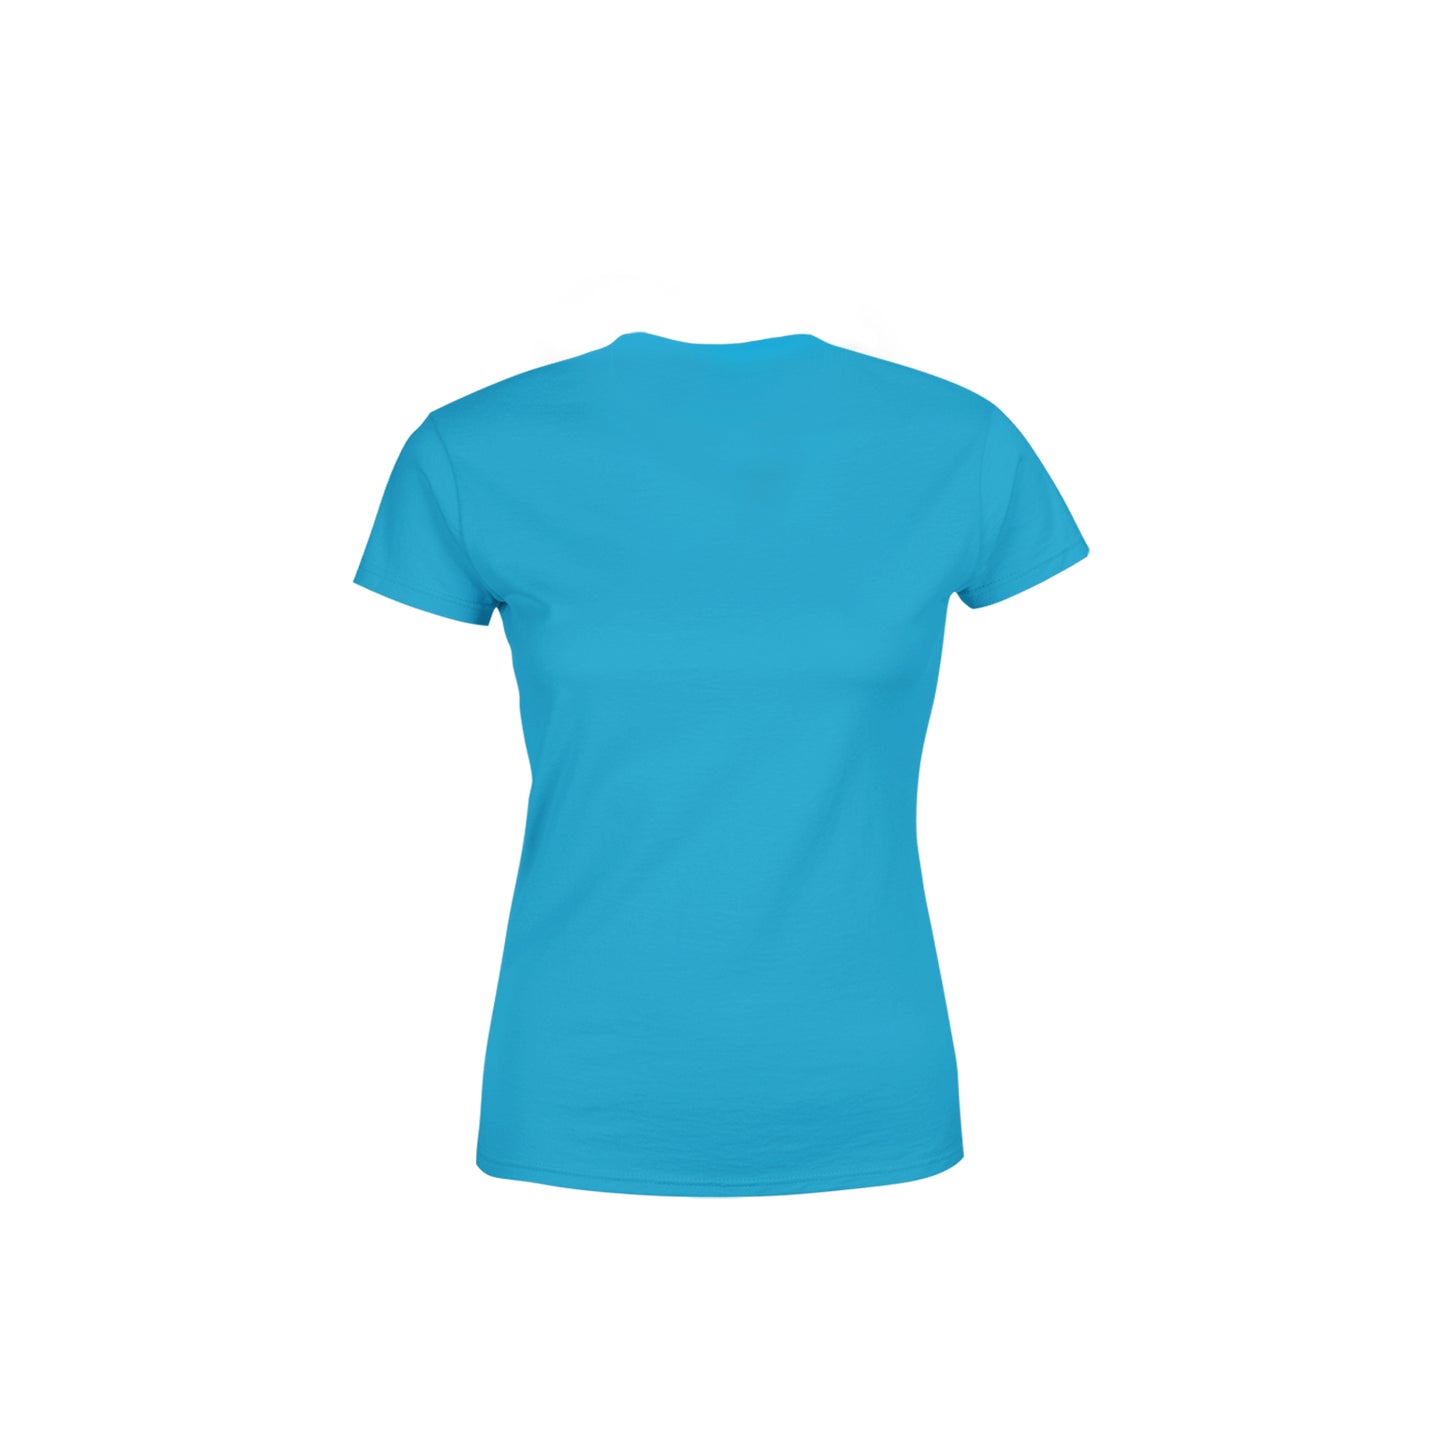 00 Number Women's T-Shirt (Sky Blue)